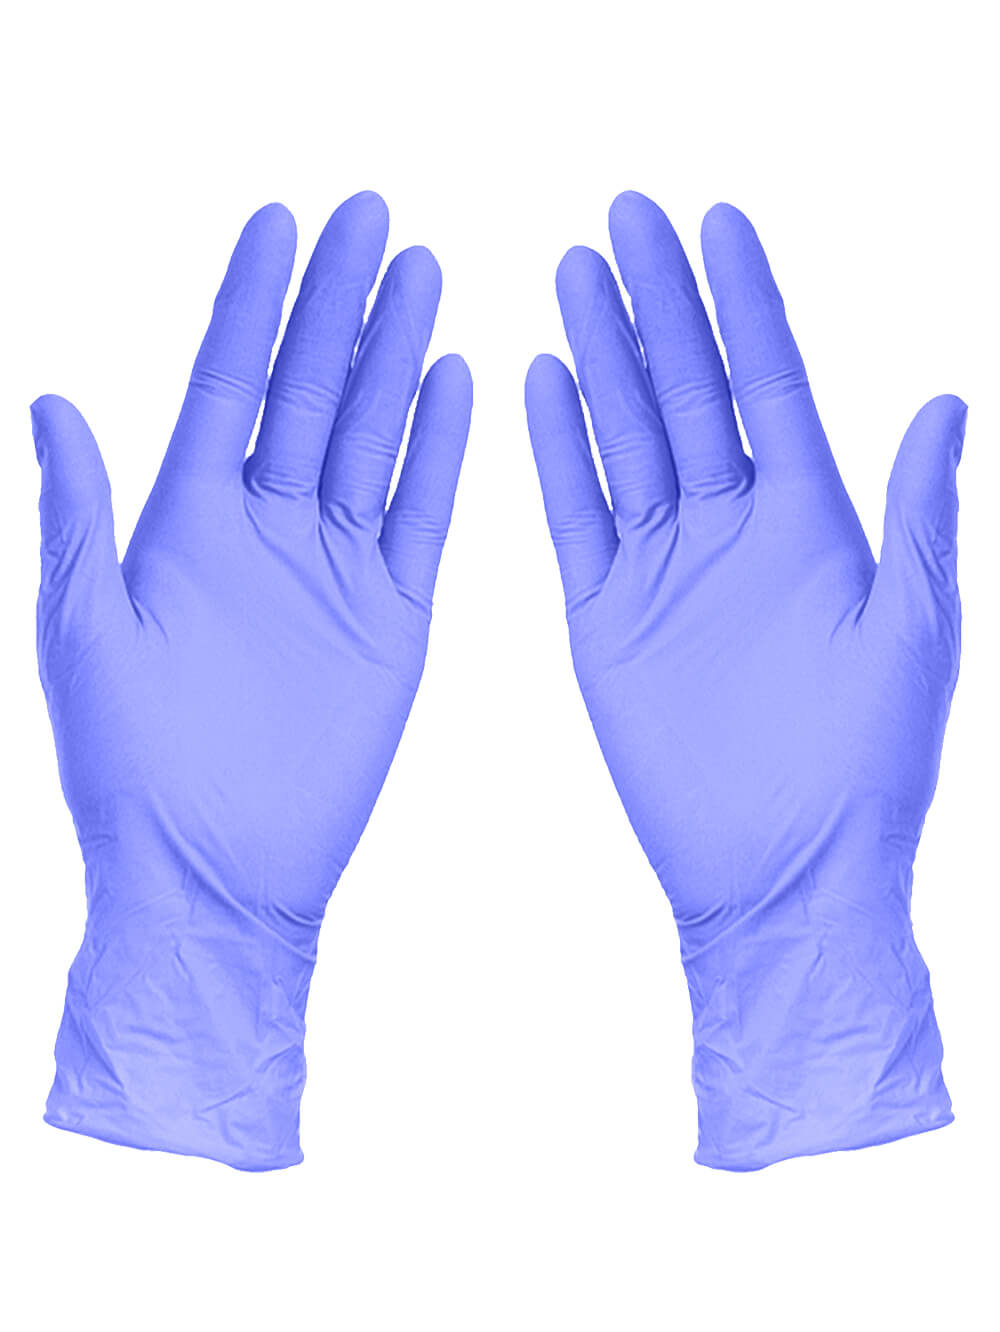 Перчатки смотровые MATRIX ZP Ice Blue Nitrile текстурированные на пальцах